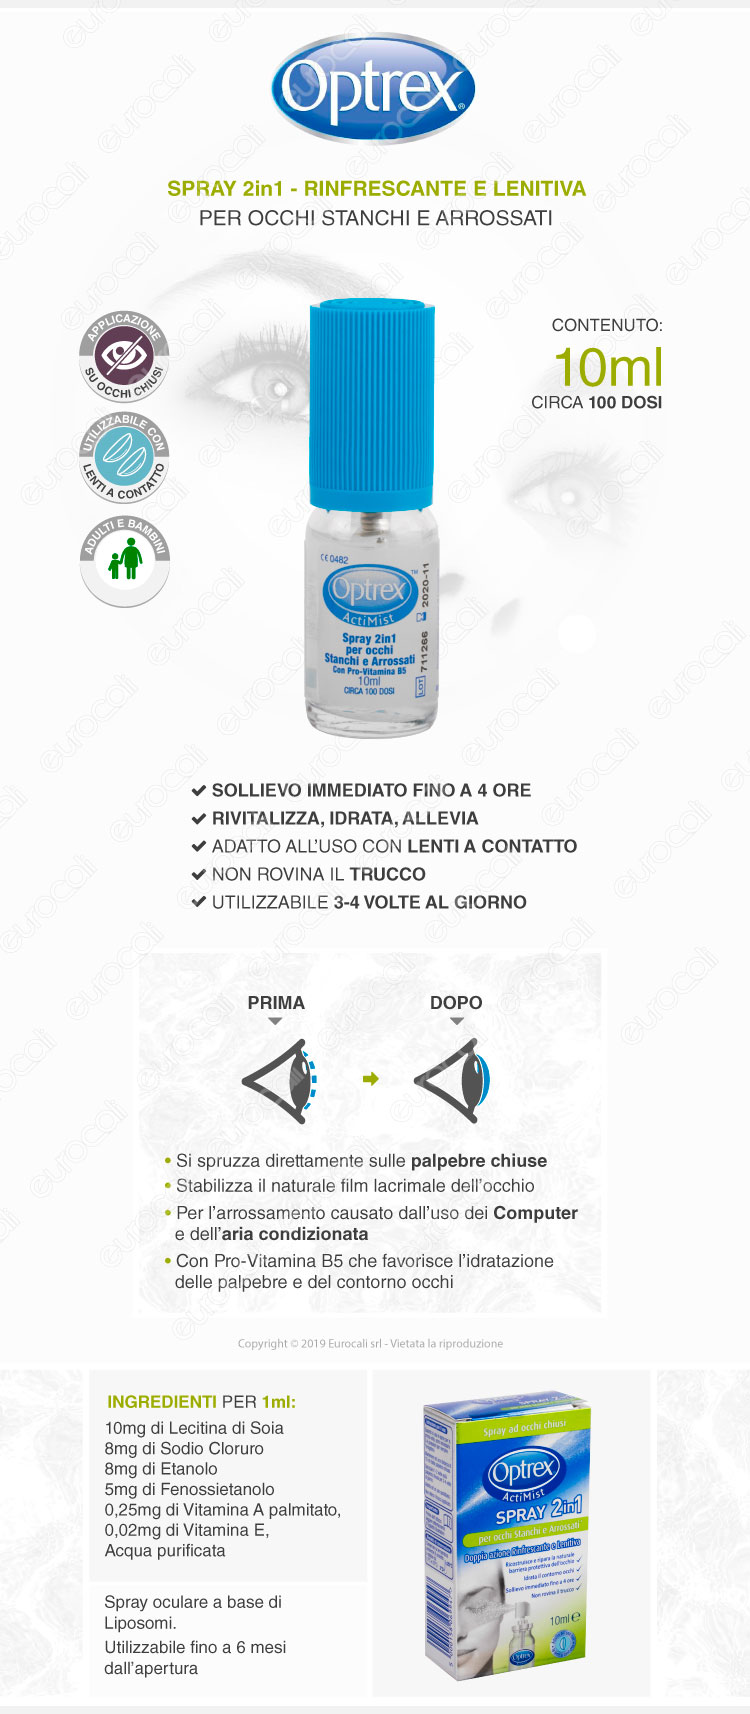 Optrex ActiMist Spray 2in1 Per Occhi Stanchi e Arrossati - Flacone da 10ml